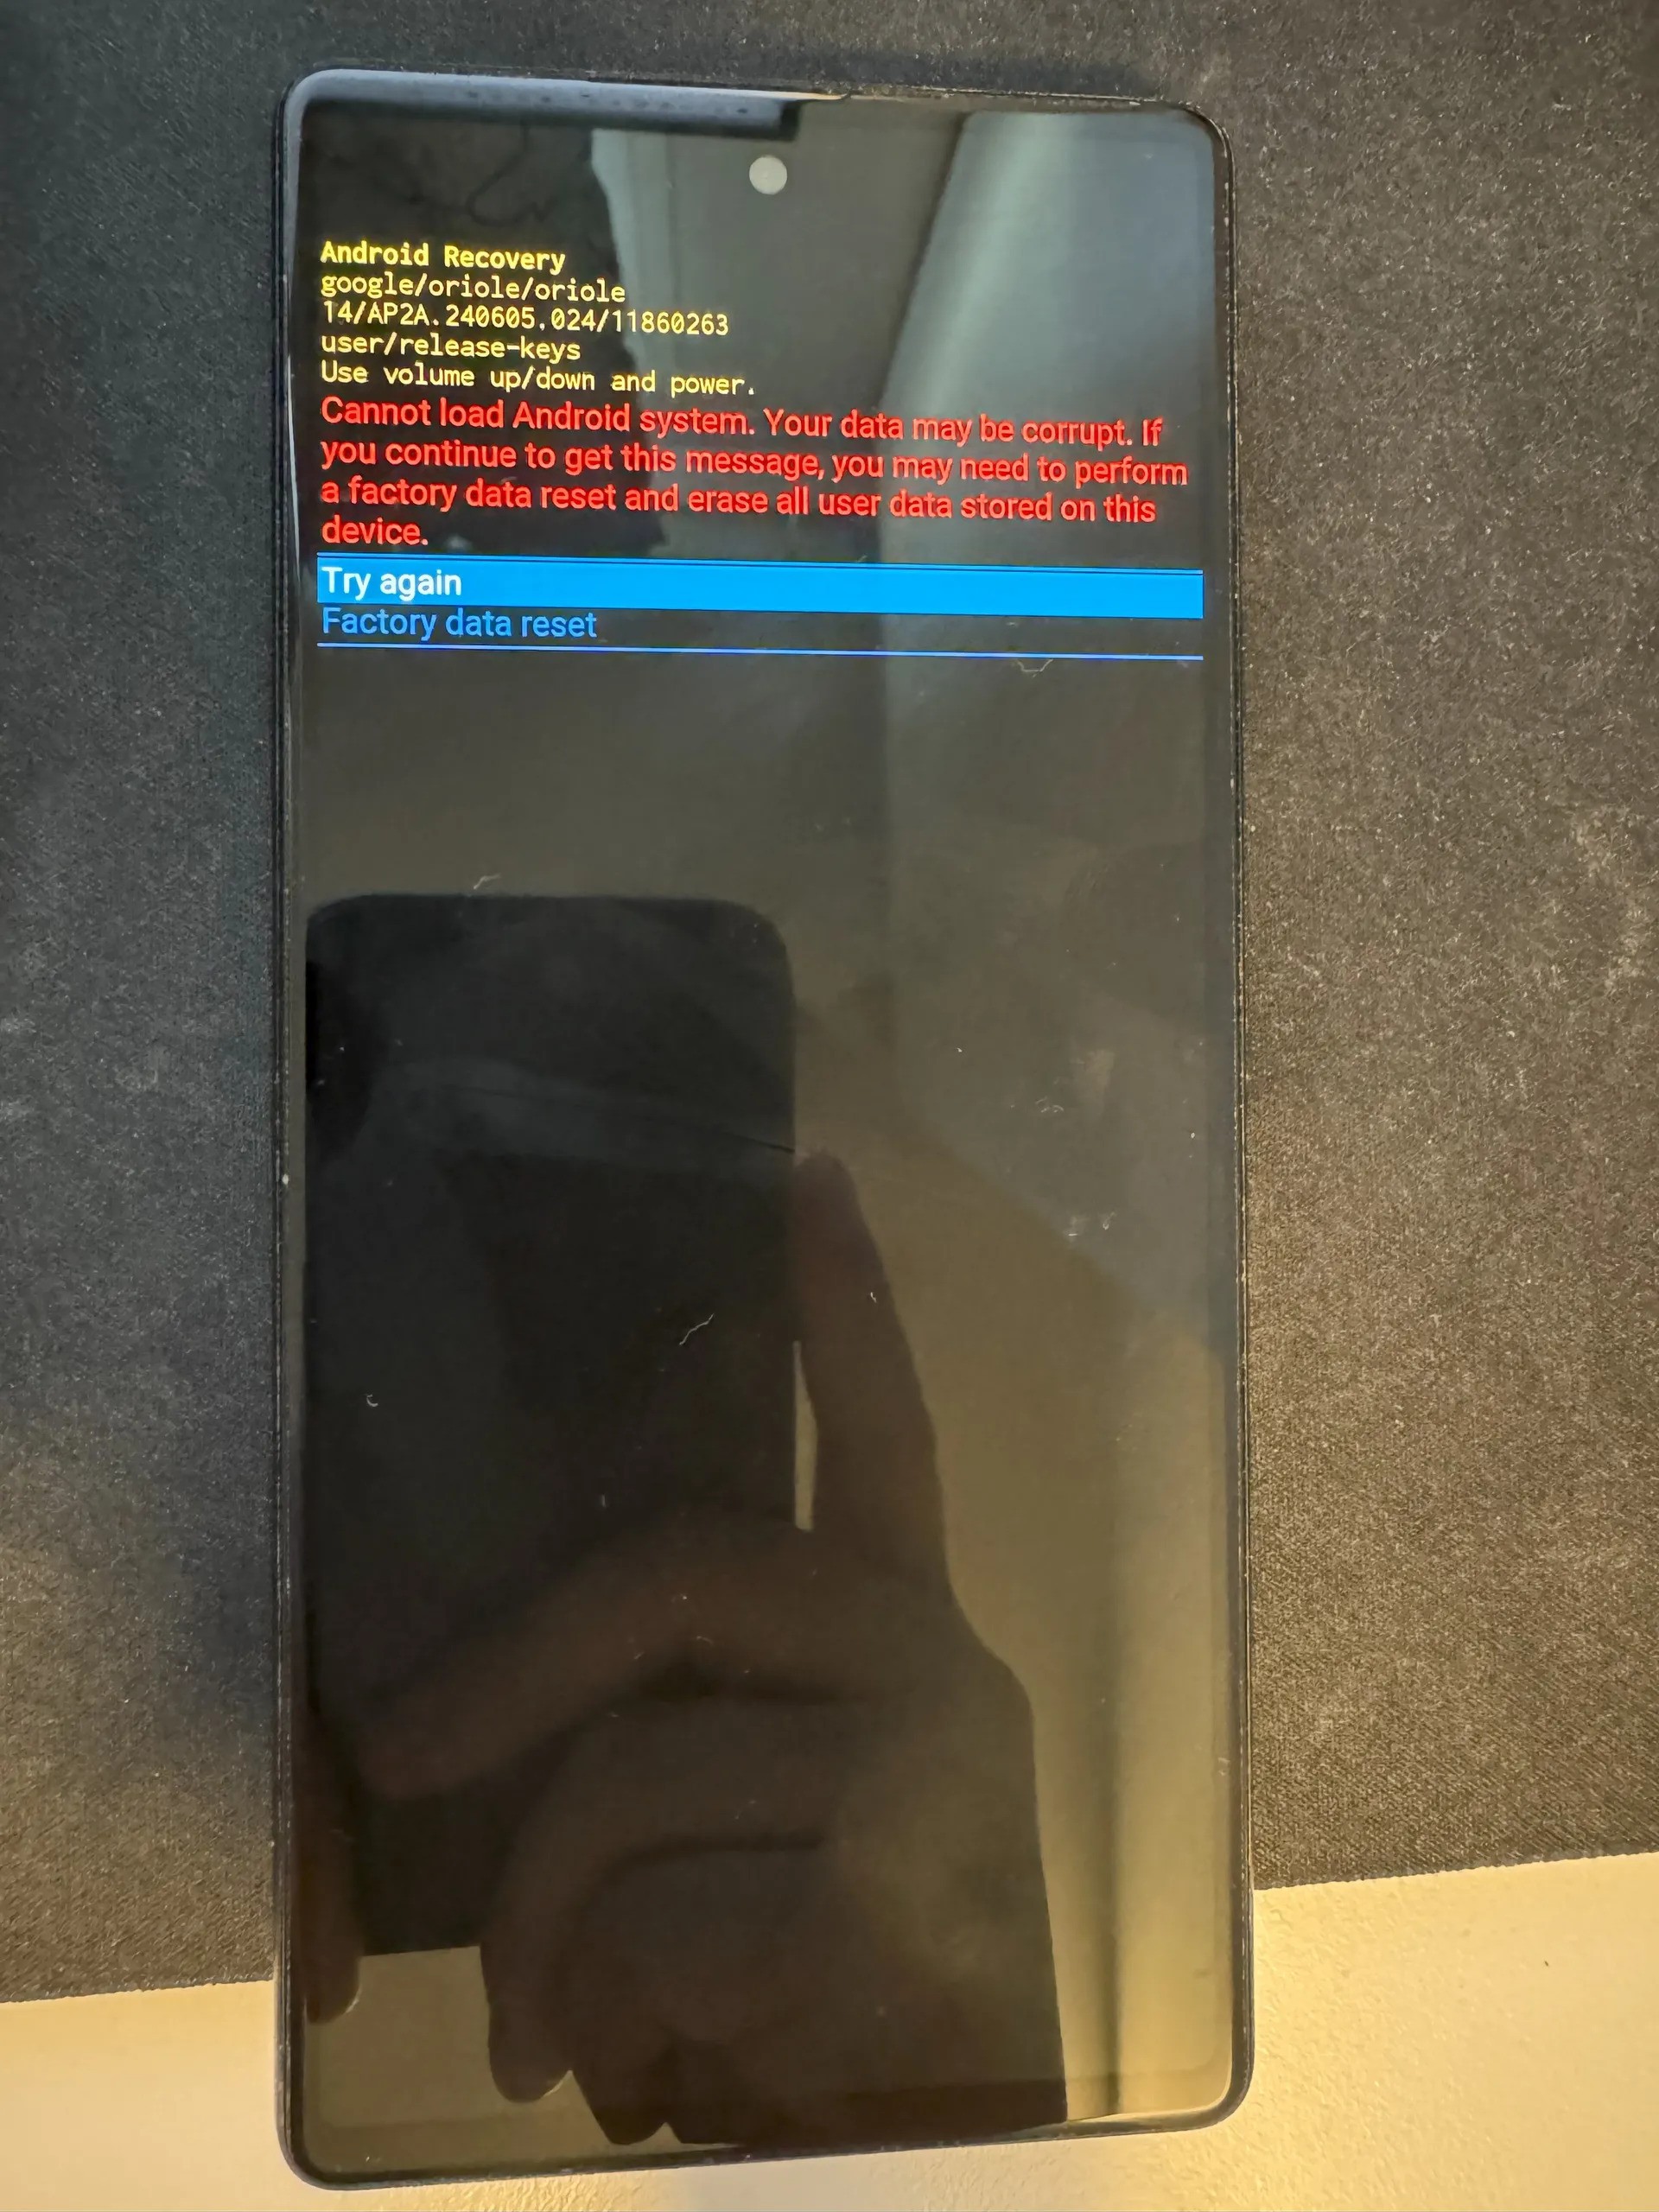 Una foto del mensaje de error en un dispositivo Pixel 6 bloqueado.